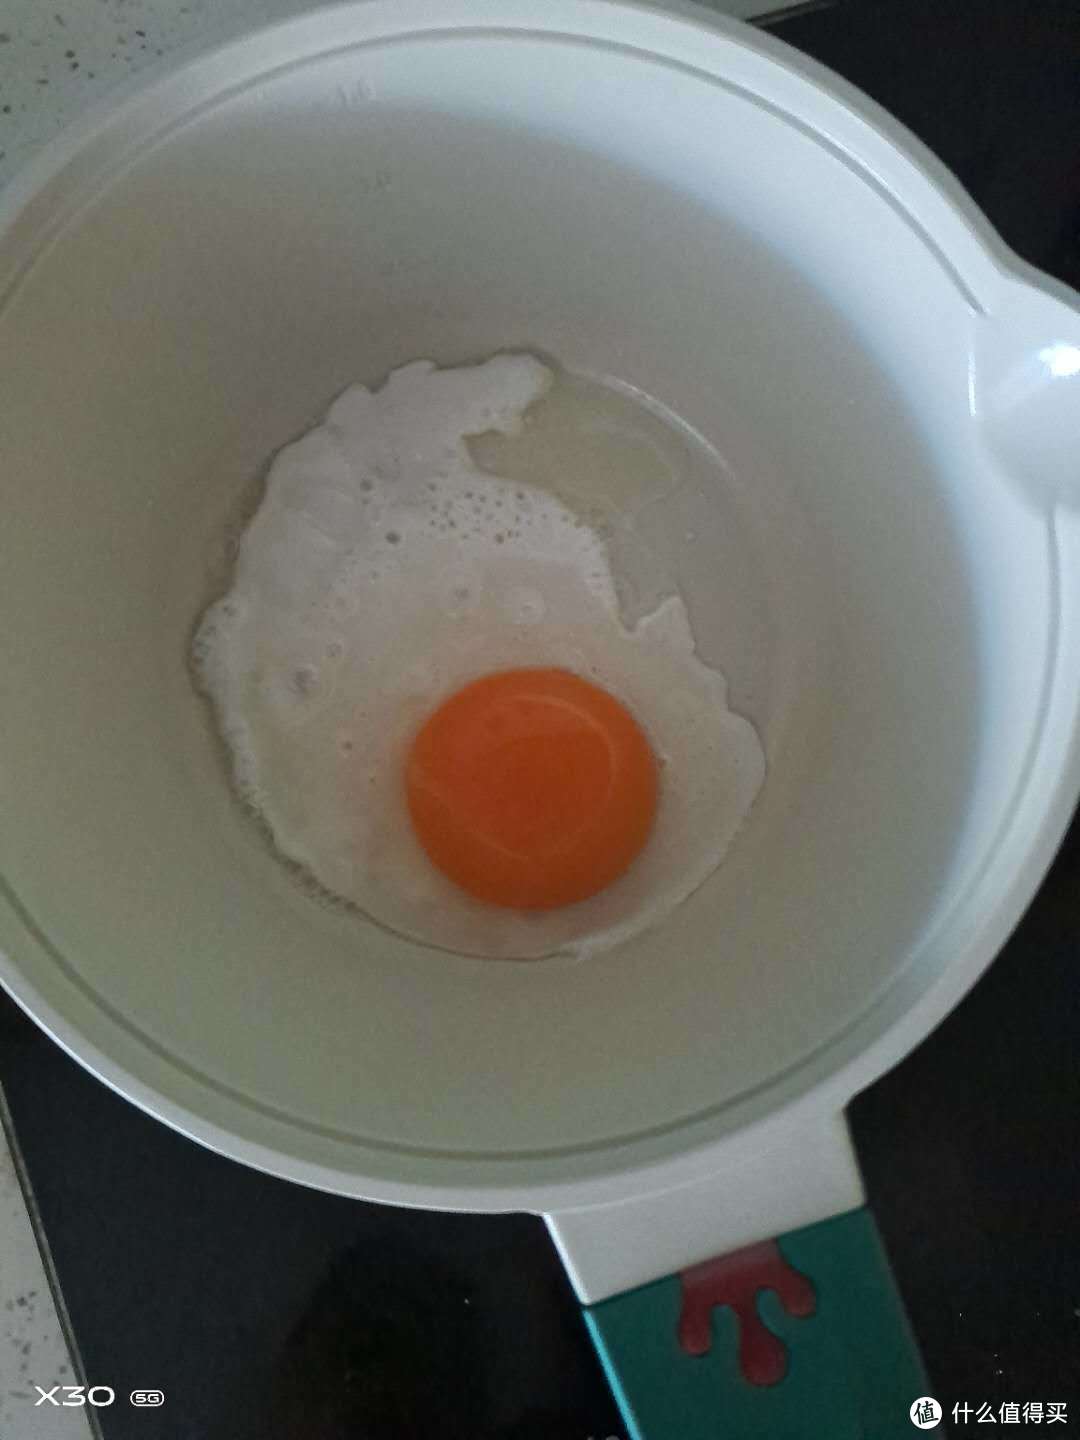 煎鸡蛋是最能直观看出不粘锅的涂层究竟好用不好用，帝伯朗这个小锅子煎鸡蛋还是可以的，放了薄薄的一层油就可以，煎鸡蛋的时候完全不会粘锅，而且感温王冠真的有在变化的。